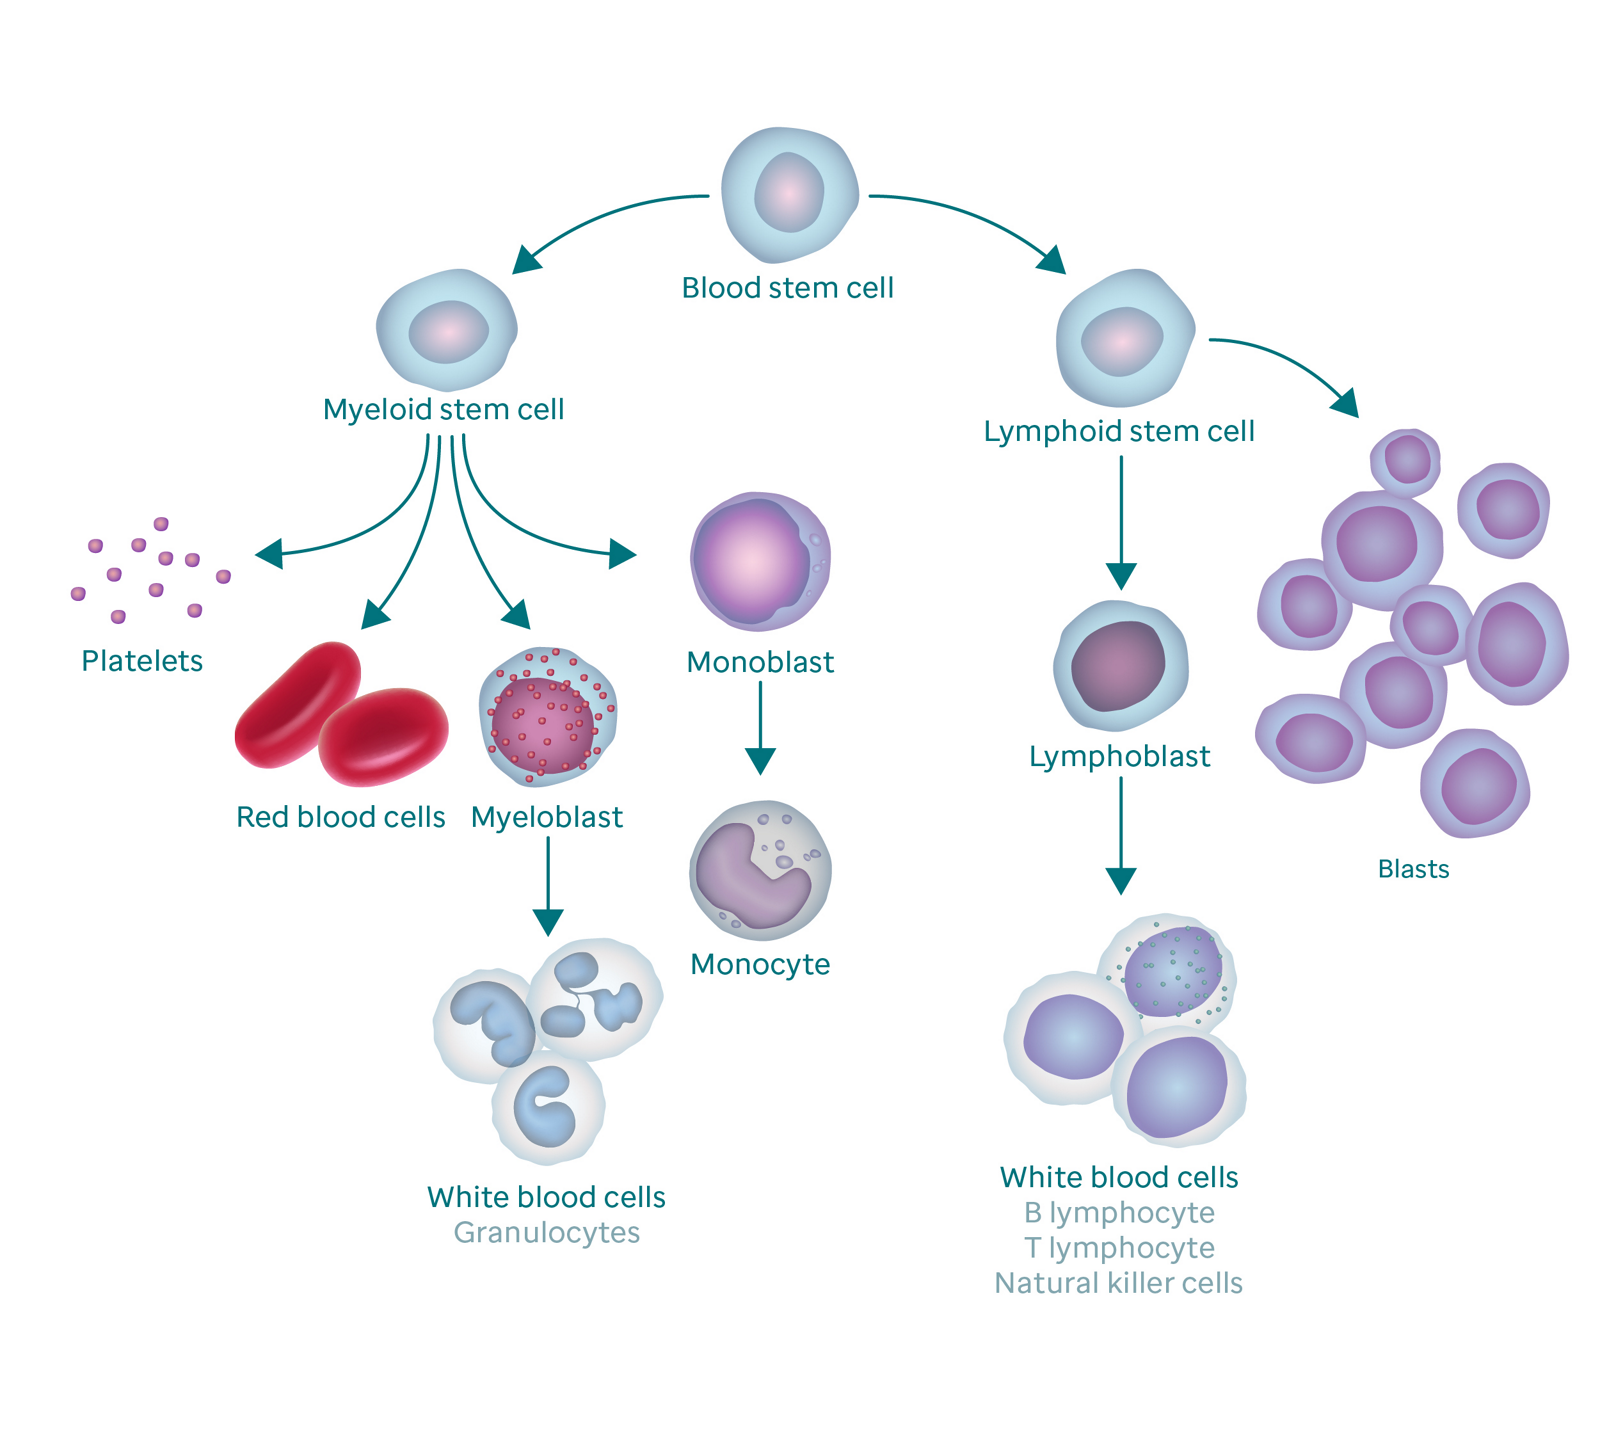 ภาพกราฟิกแสดงกระบวนการสร้างเม็ดเลือดและผลที่ตามมาของบลาสเซลล์  กราฟิกเริ่มต้นด้วยเซลล์ต้นกำเนิดจากเลือด  ทางด้านซ้ายจะแตกแขนงออกเป็นเซลล์ต้นกำเนิดแบบไมอีลอยด์ ซึ่งแตกแขนงเป็นเกล็ดเลือด เซลล์เม็ดเลือดแดง ไมอีโลบลาส และโมโนบลาสต์  myeloblast เปลี่ยนเป็นเซลล์เม็ดเลือดขาว (เรียกอีกอย่างว่า granulocytes) และ monoblast เปลี่ยนเป็น monocyte  แขนงที่ถูกต้องของเซลล์ต้นกำเนิดจากเลือดไปยังเซลล์ต้นกำเนิดจากต่อมน้ำเหลือง ซึ่งแตกแขนงออกเป็นเซลล์เม็ดเลือดขาว (ซึ่งเปลี่ยนเป็นเซลล์เม็ดเลือดขาว) และเซลล์บลาส